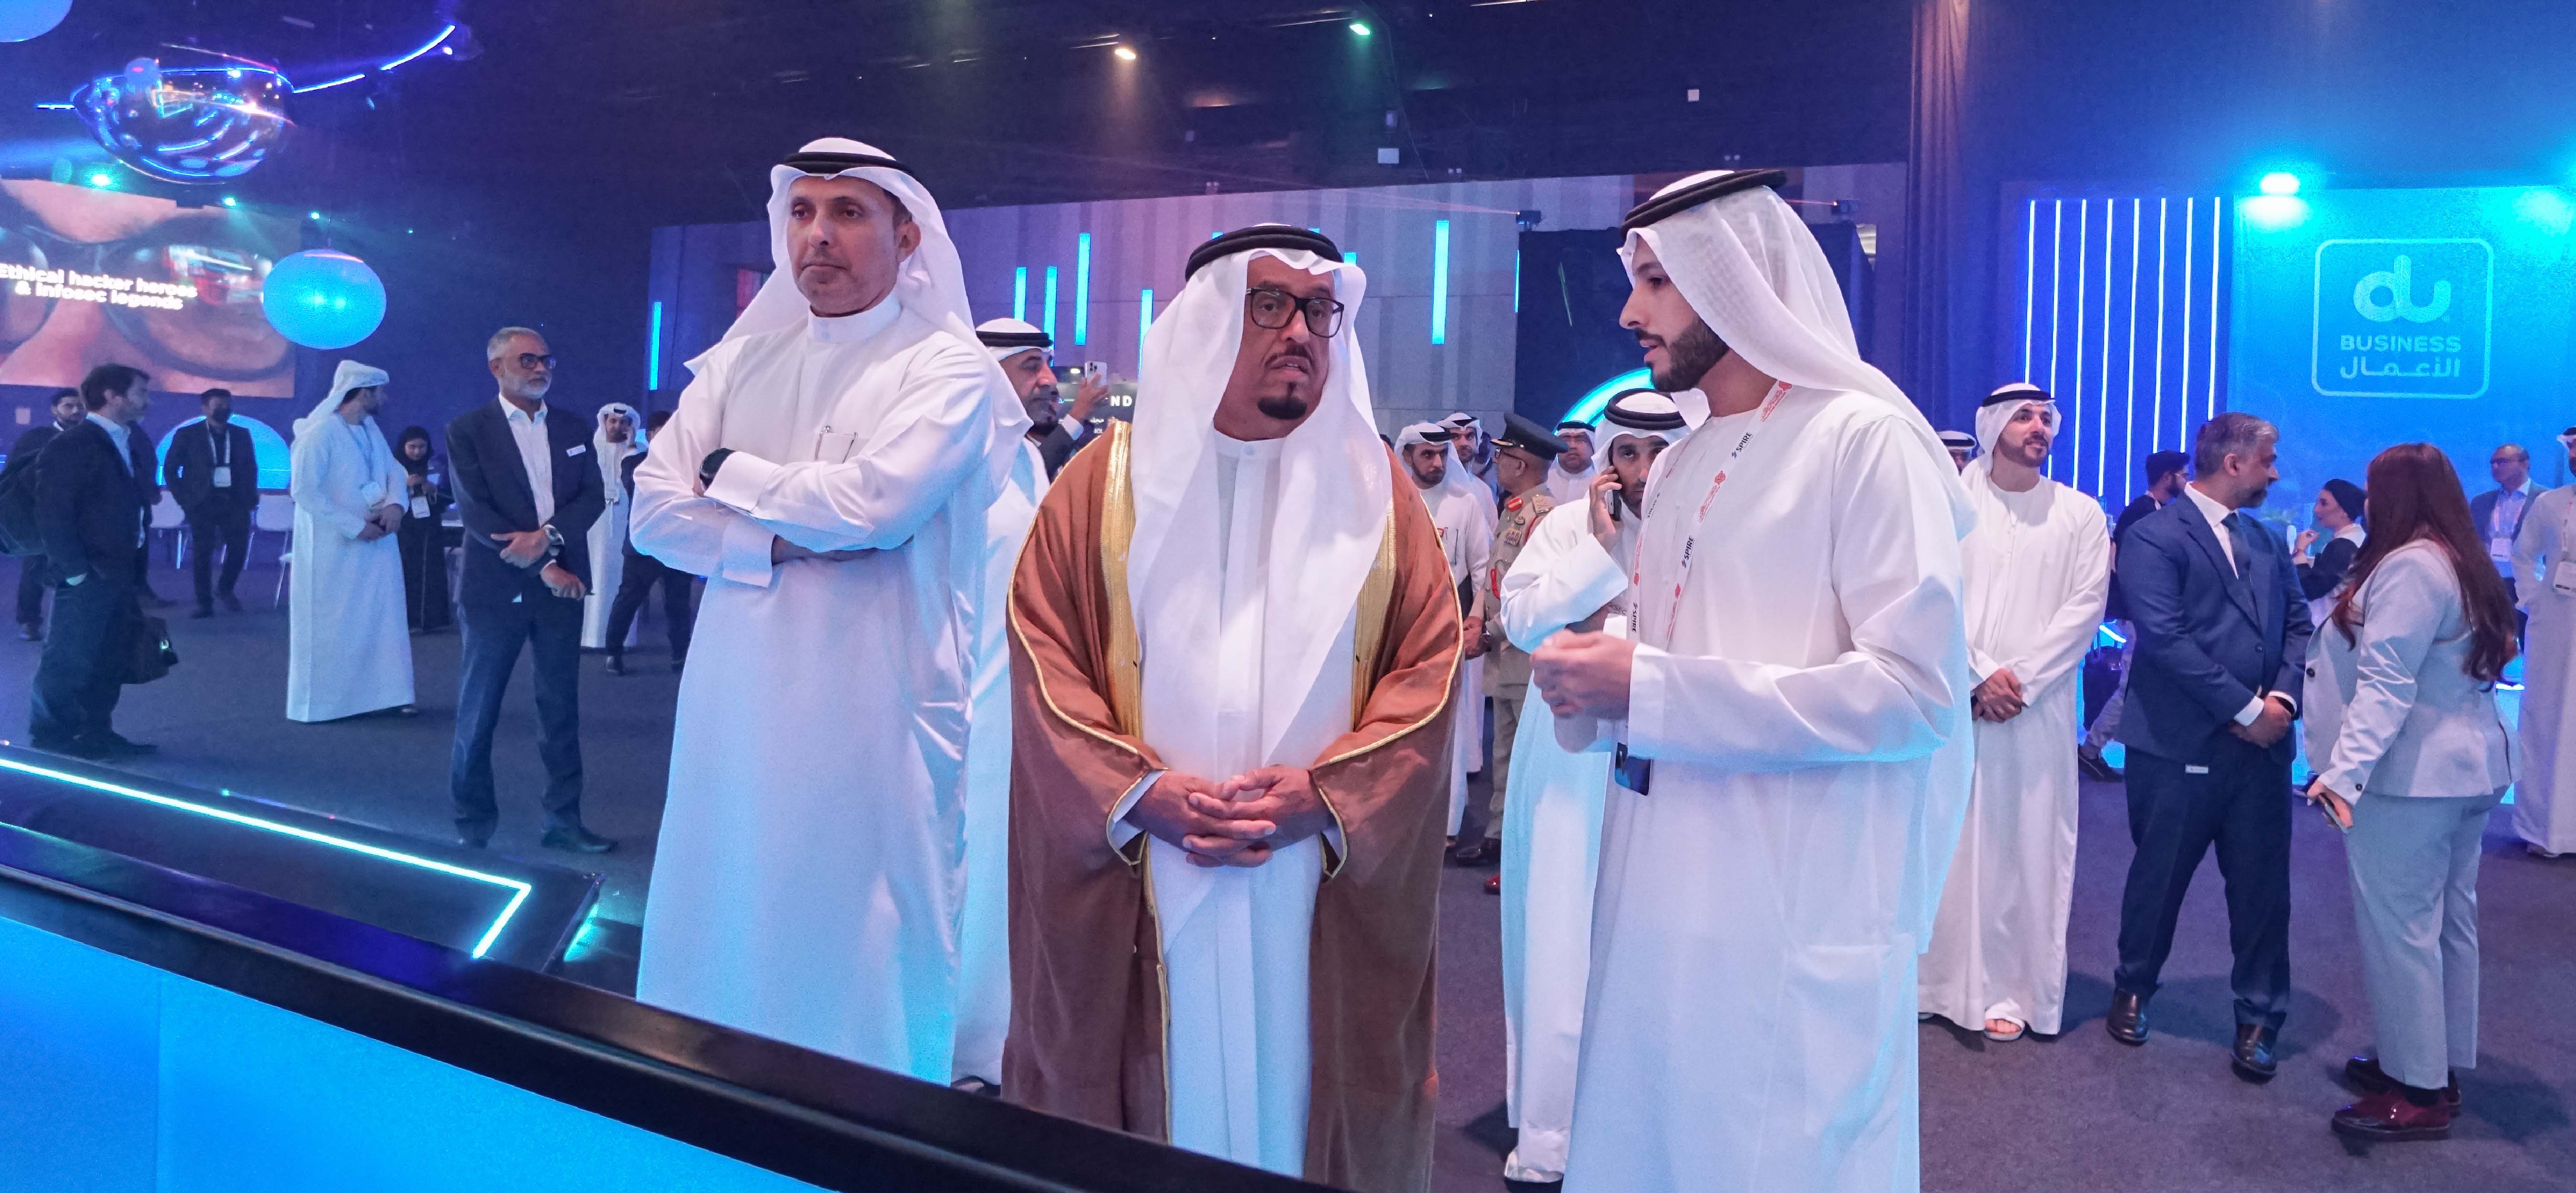 مشاركة مجلس الأمن السيبراني في معرض ومؤتمر الخليج العالمي لأمن المعلومات